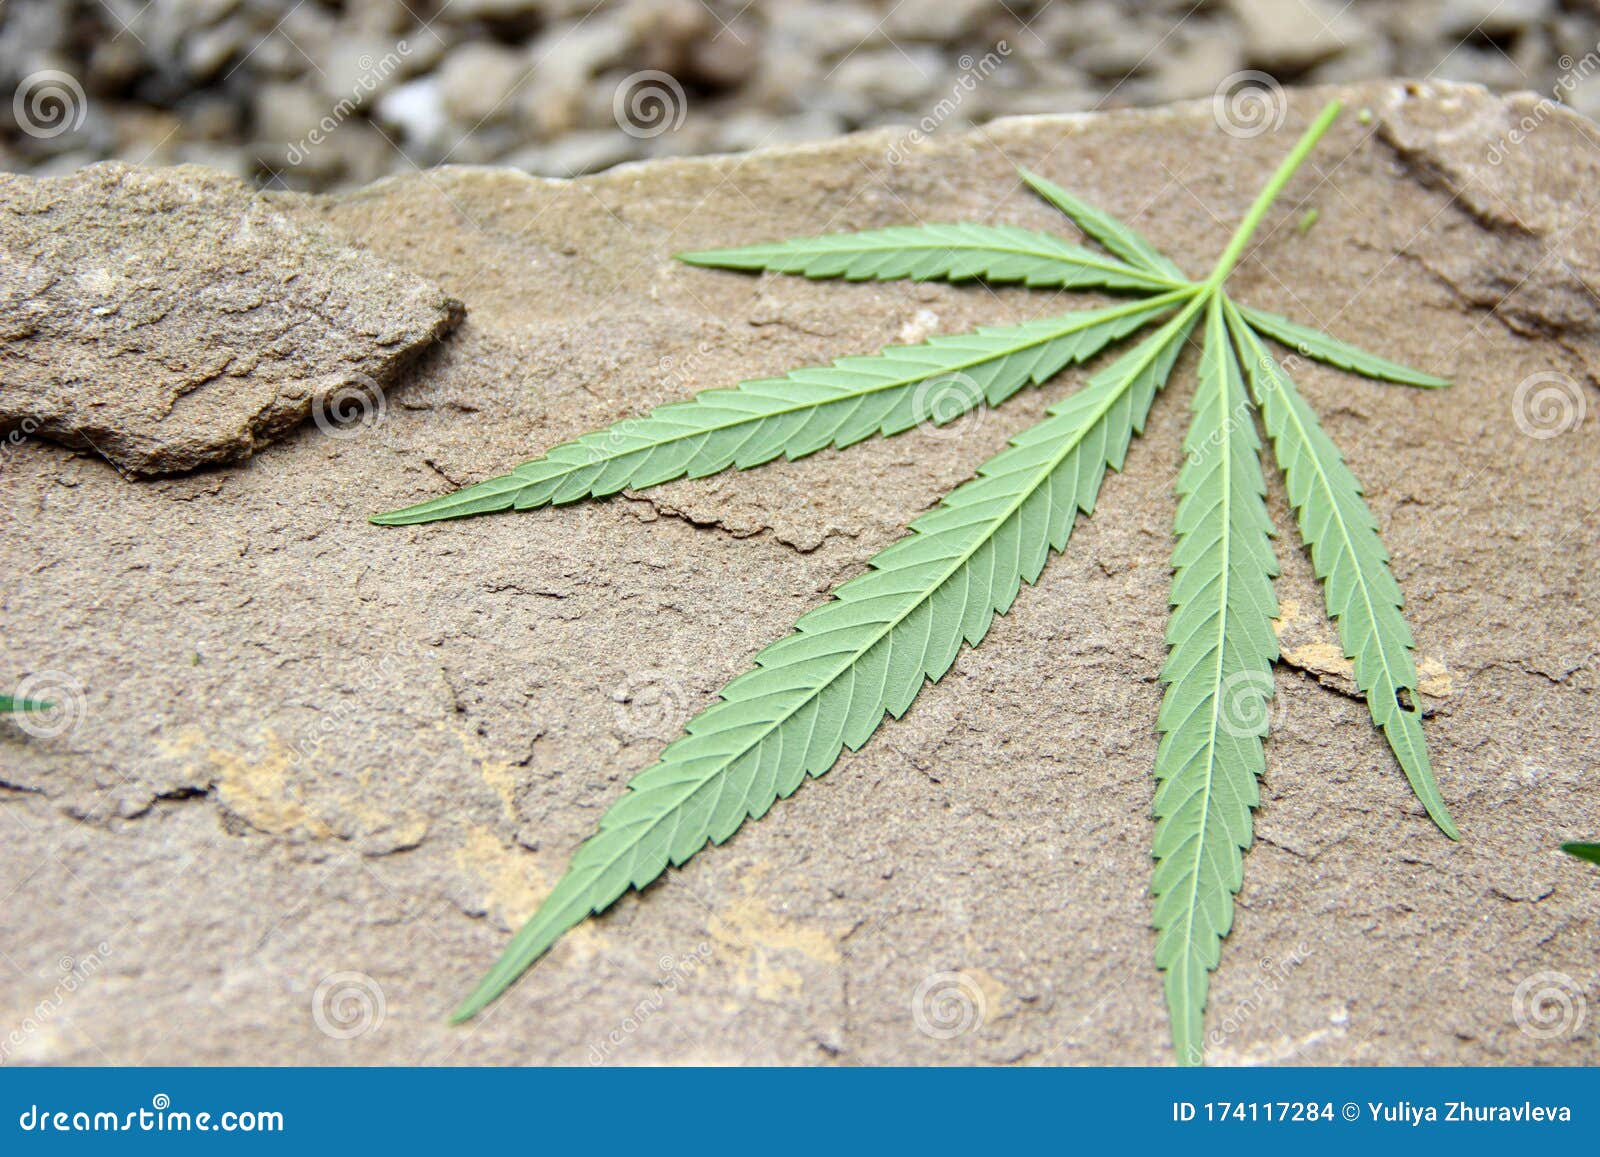 лечебные травы марихуаны